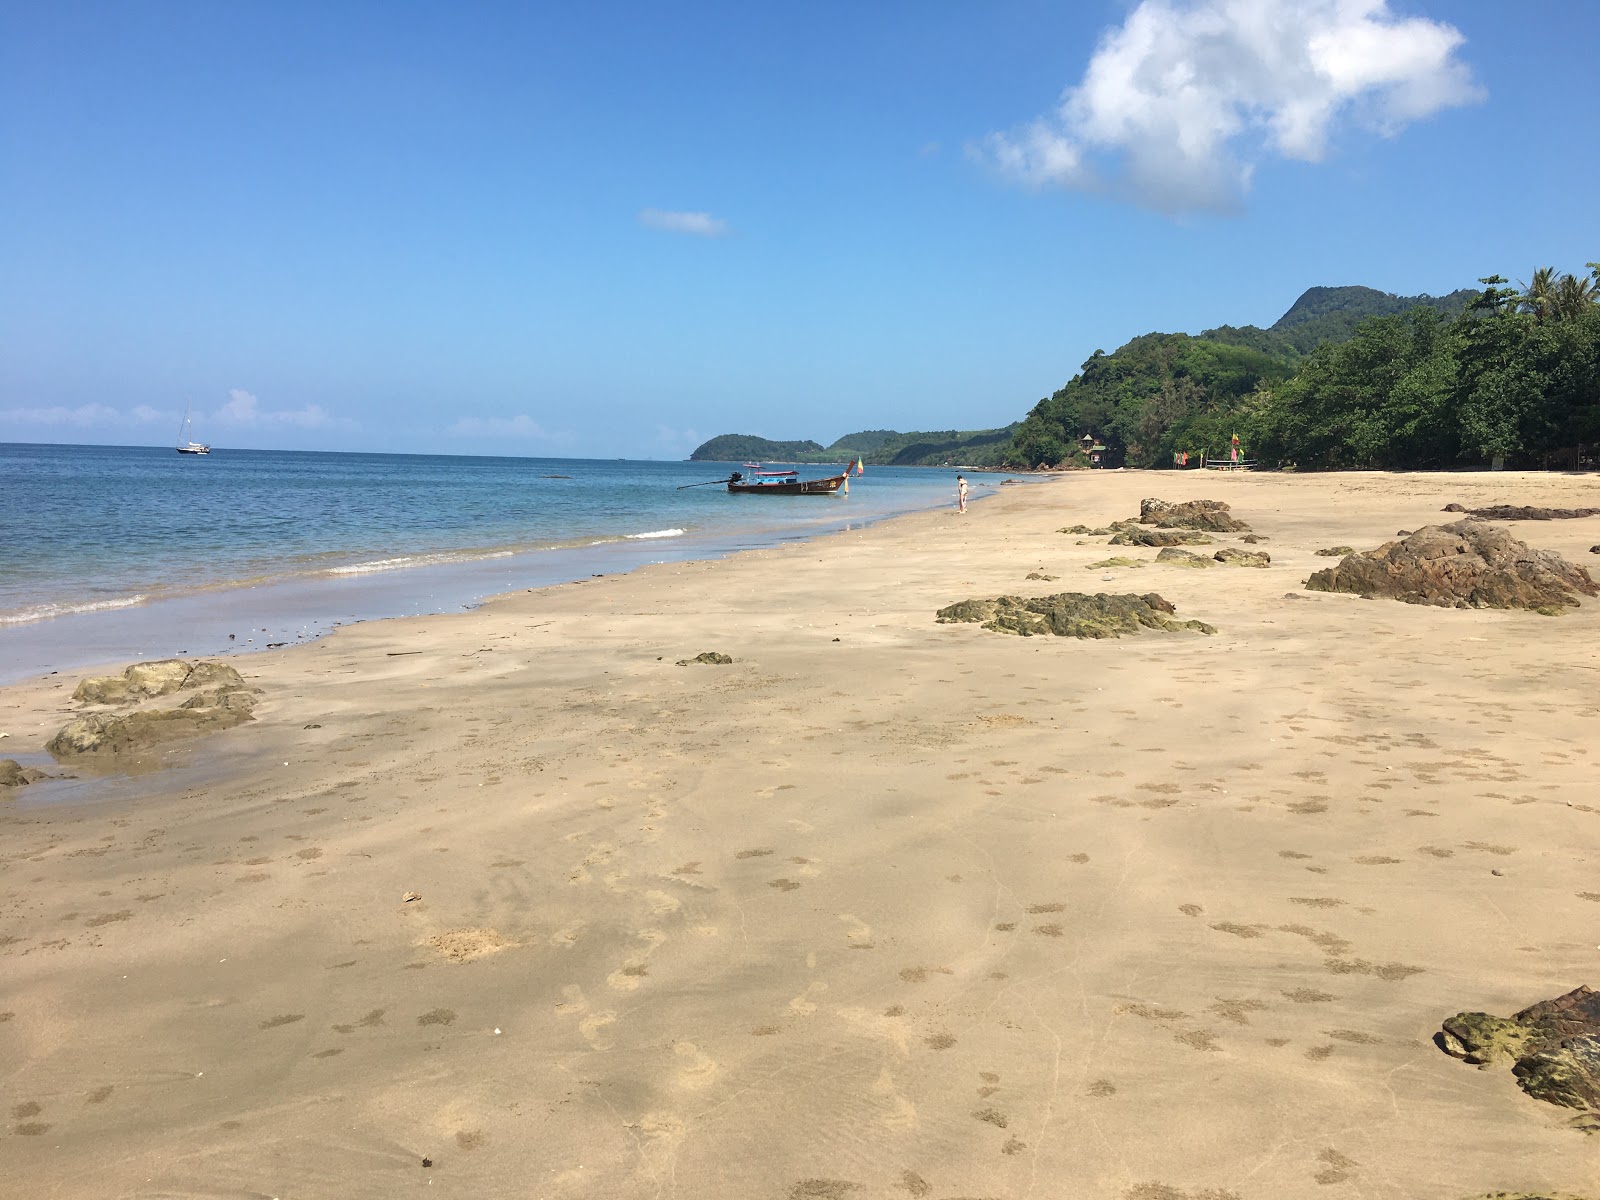 Ting-rai Beach'in fotoğrafı geniş plaj ile birlikte